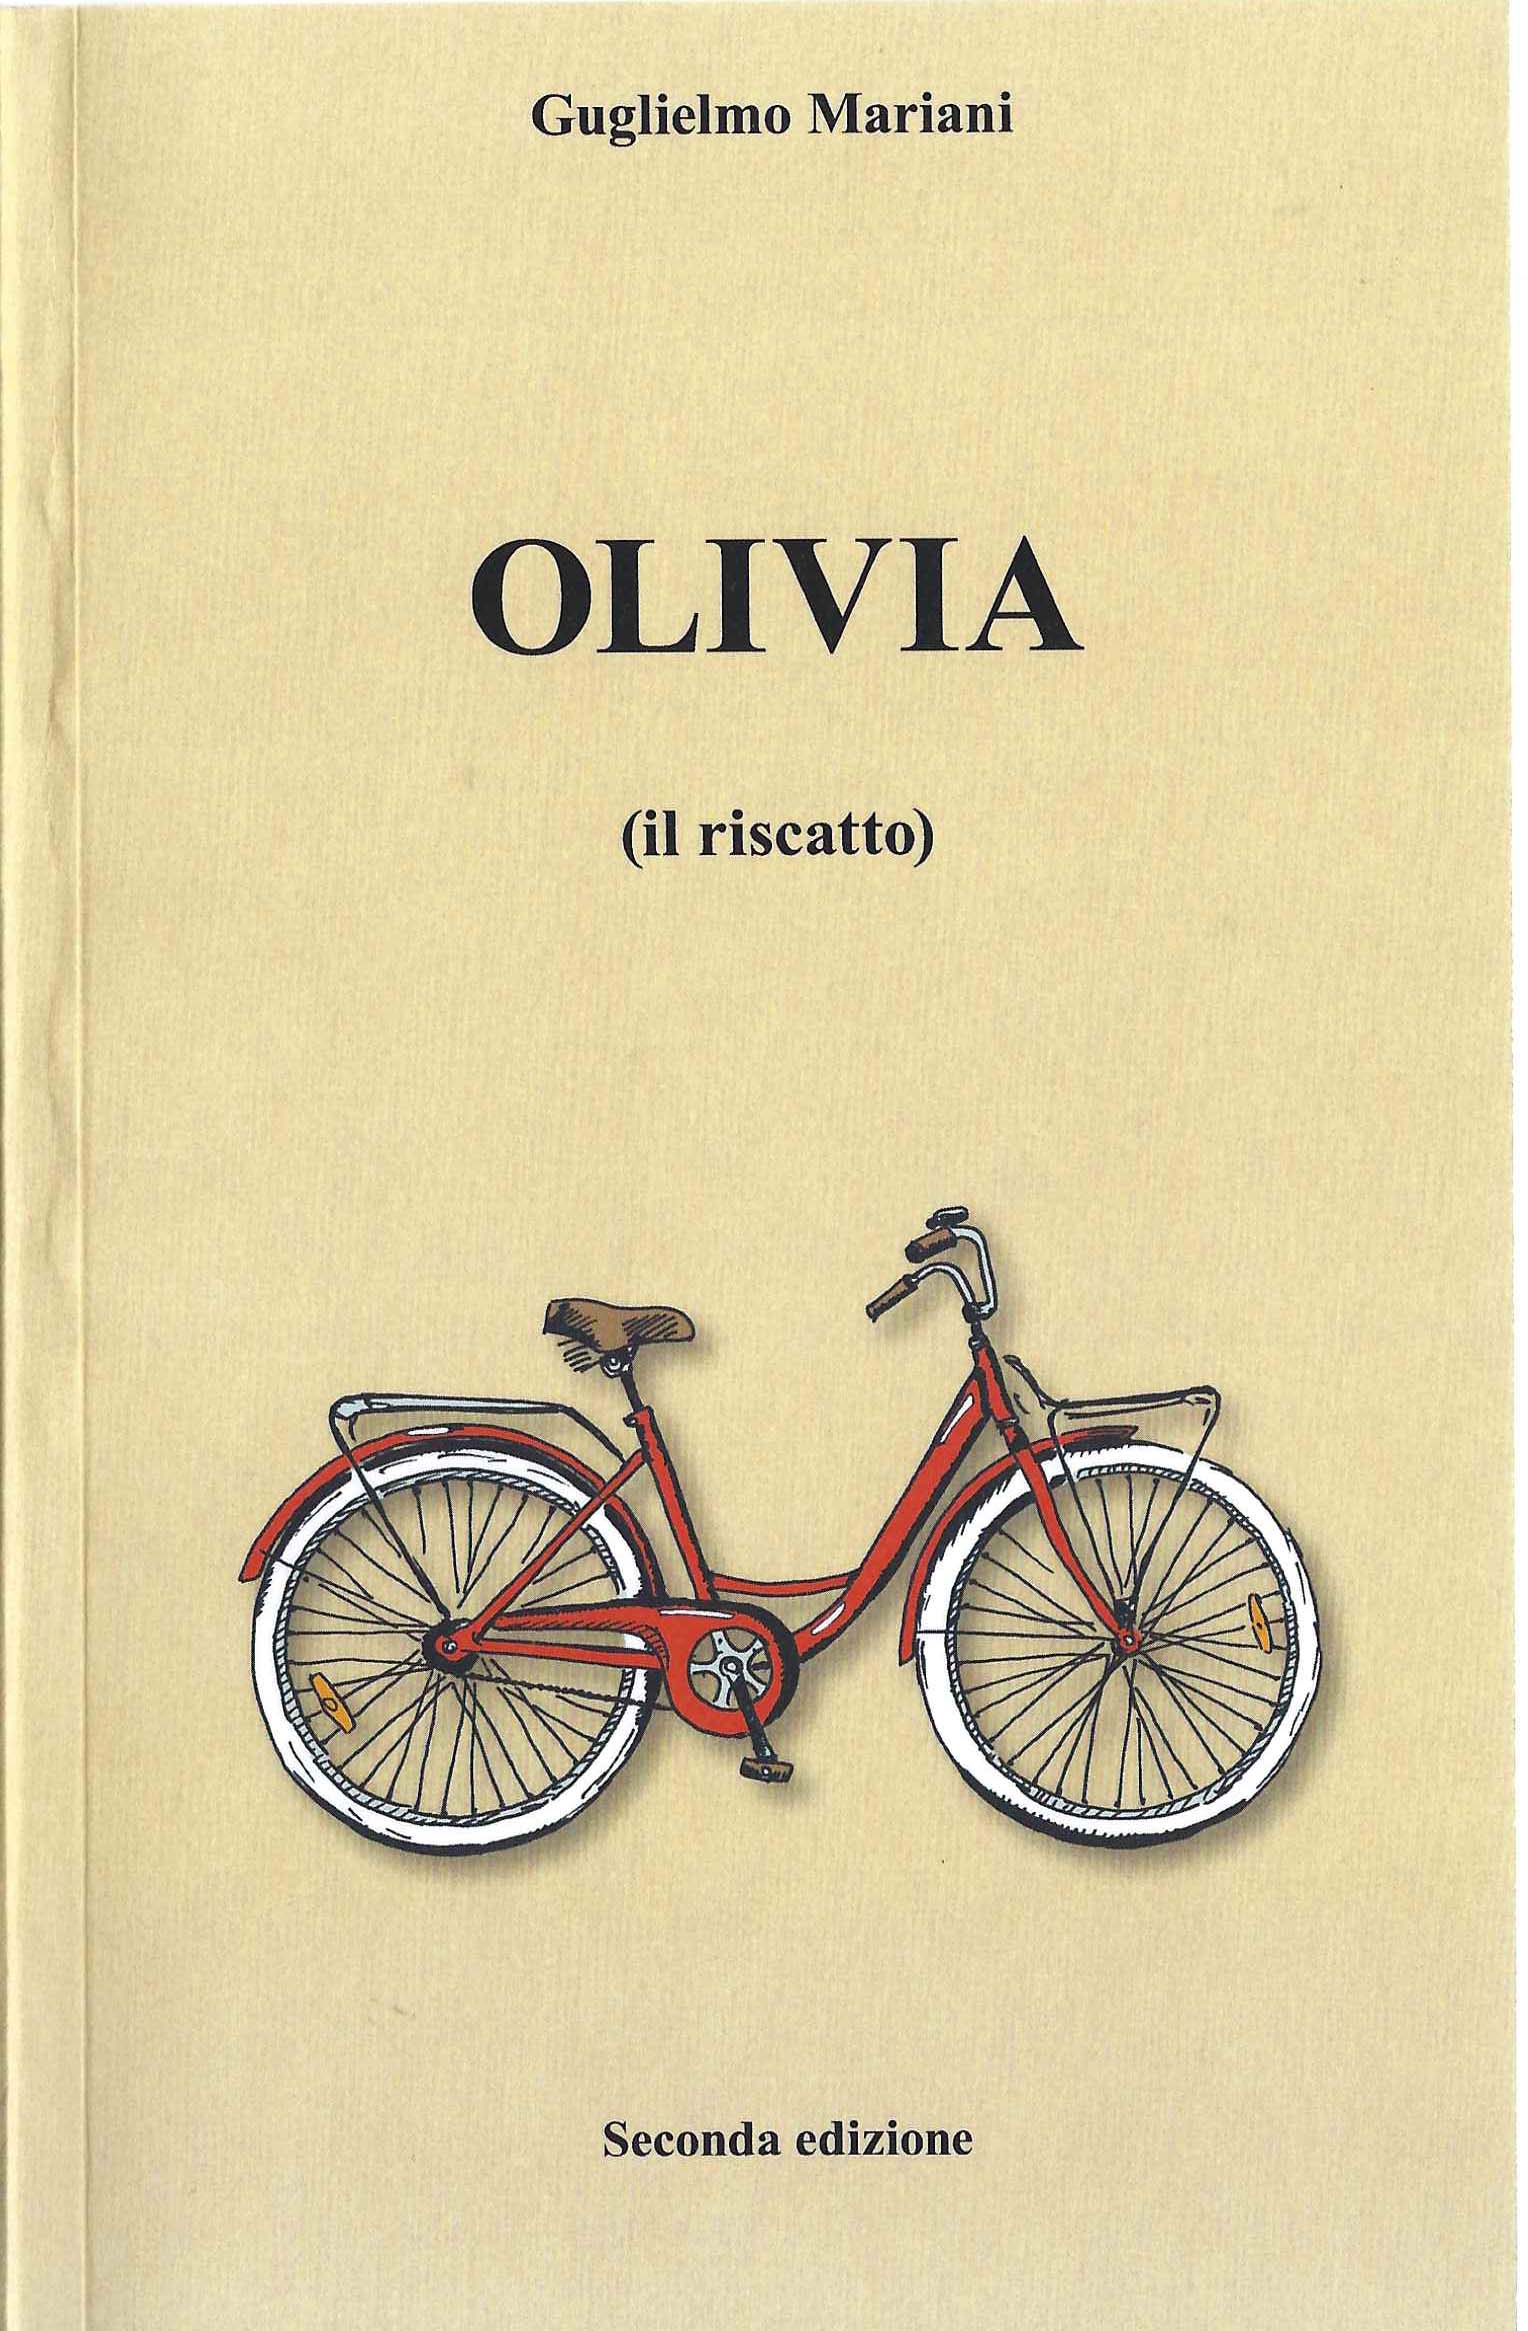 Olivia 2a edizione di Guglielmo Mariani opere letterarie romanzo